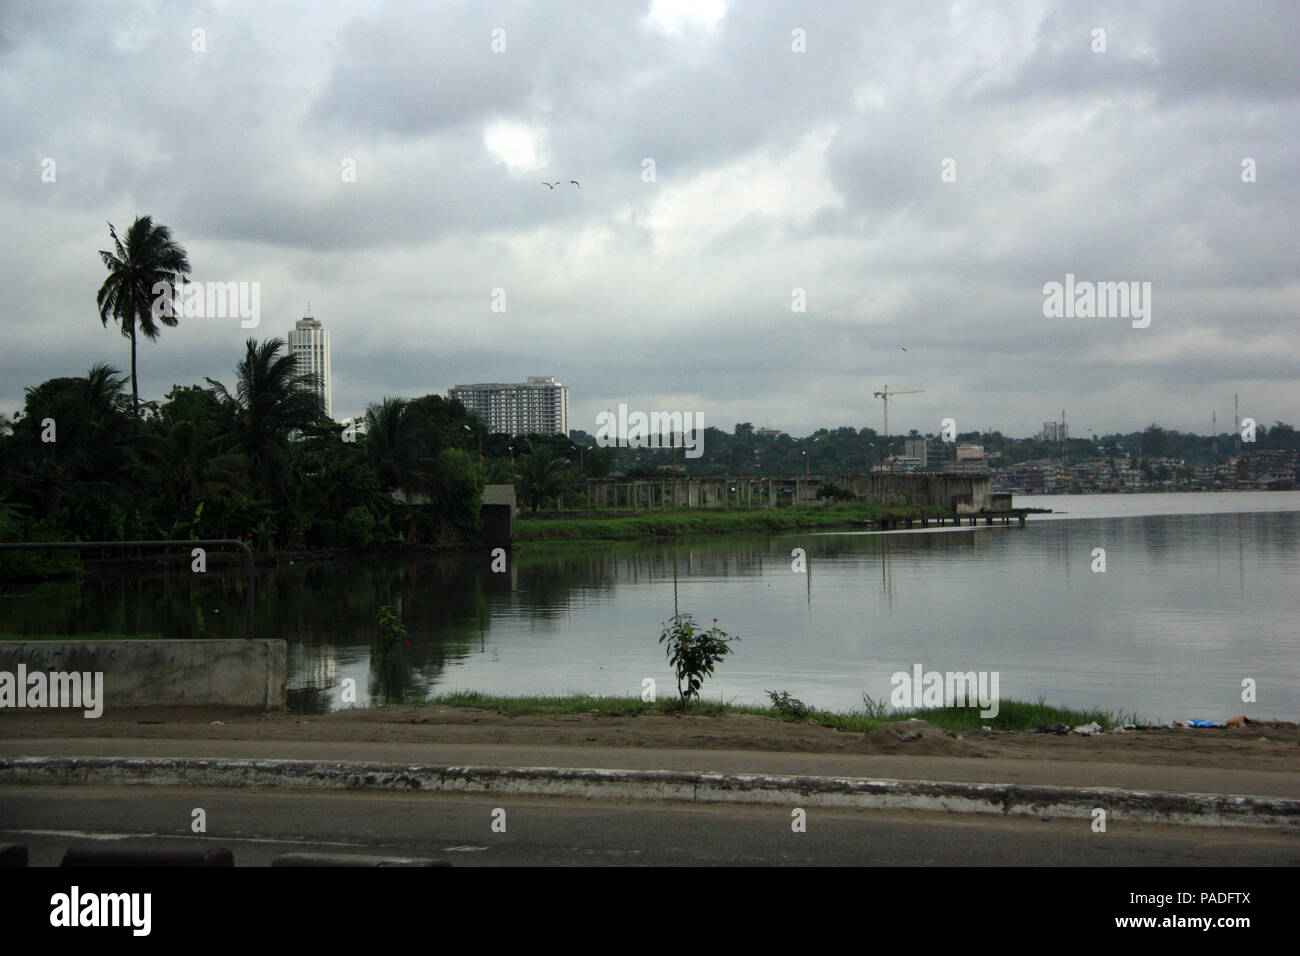 Abidjan, Cote d'Ivoire Stock Photo